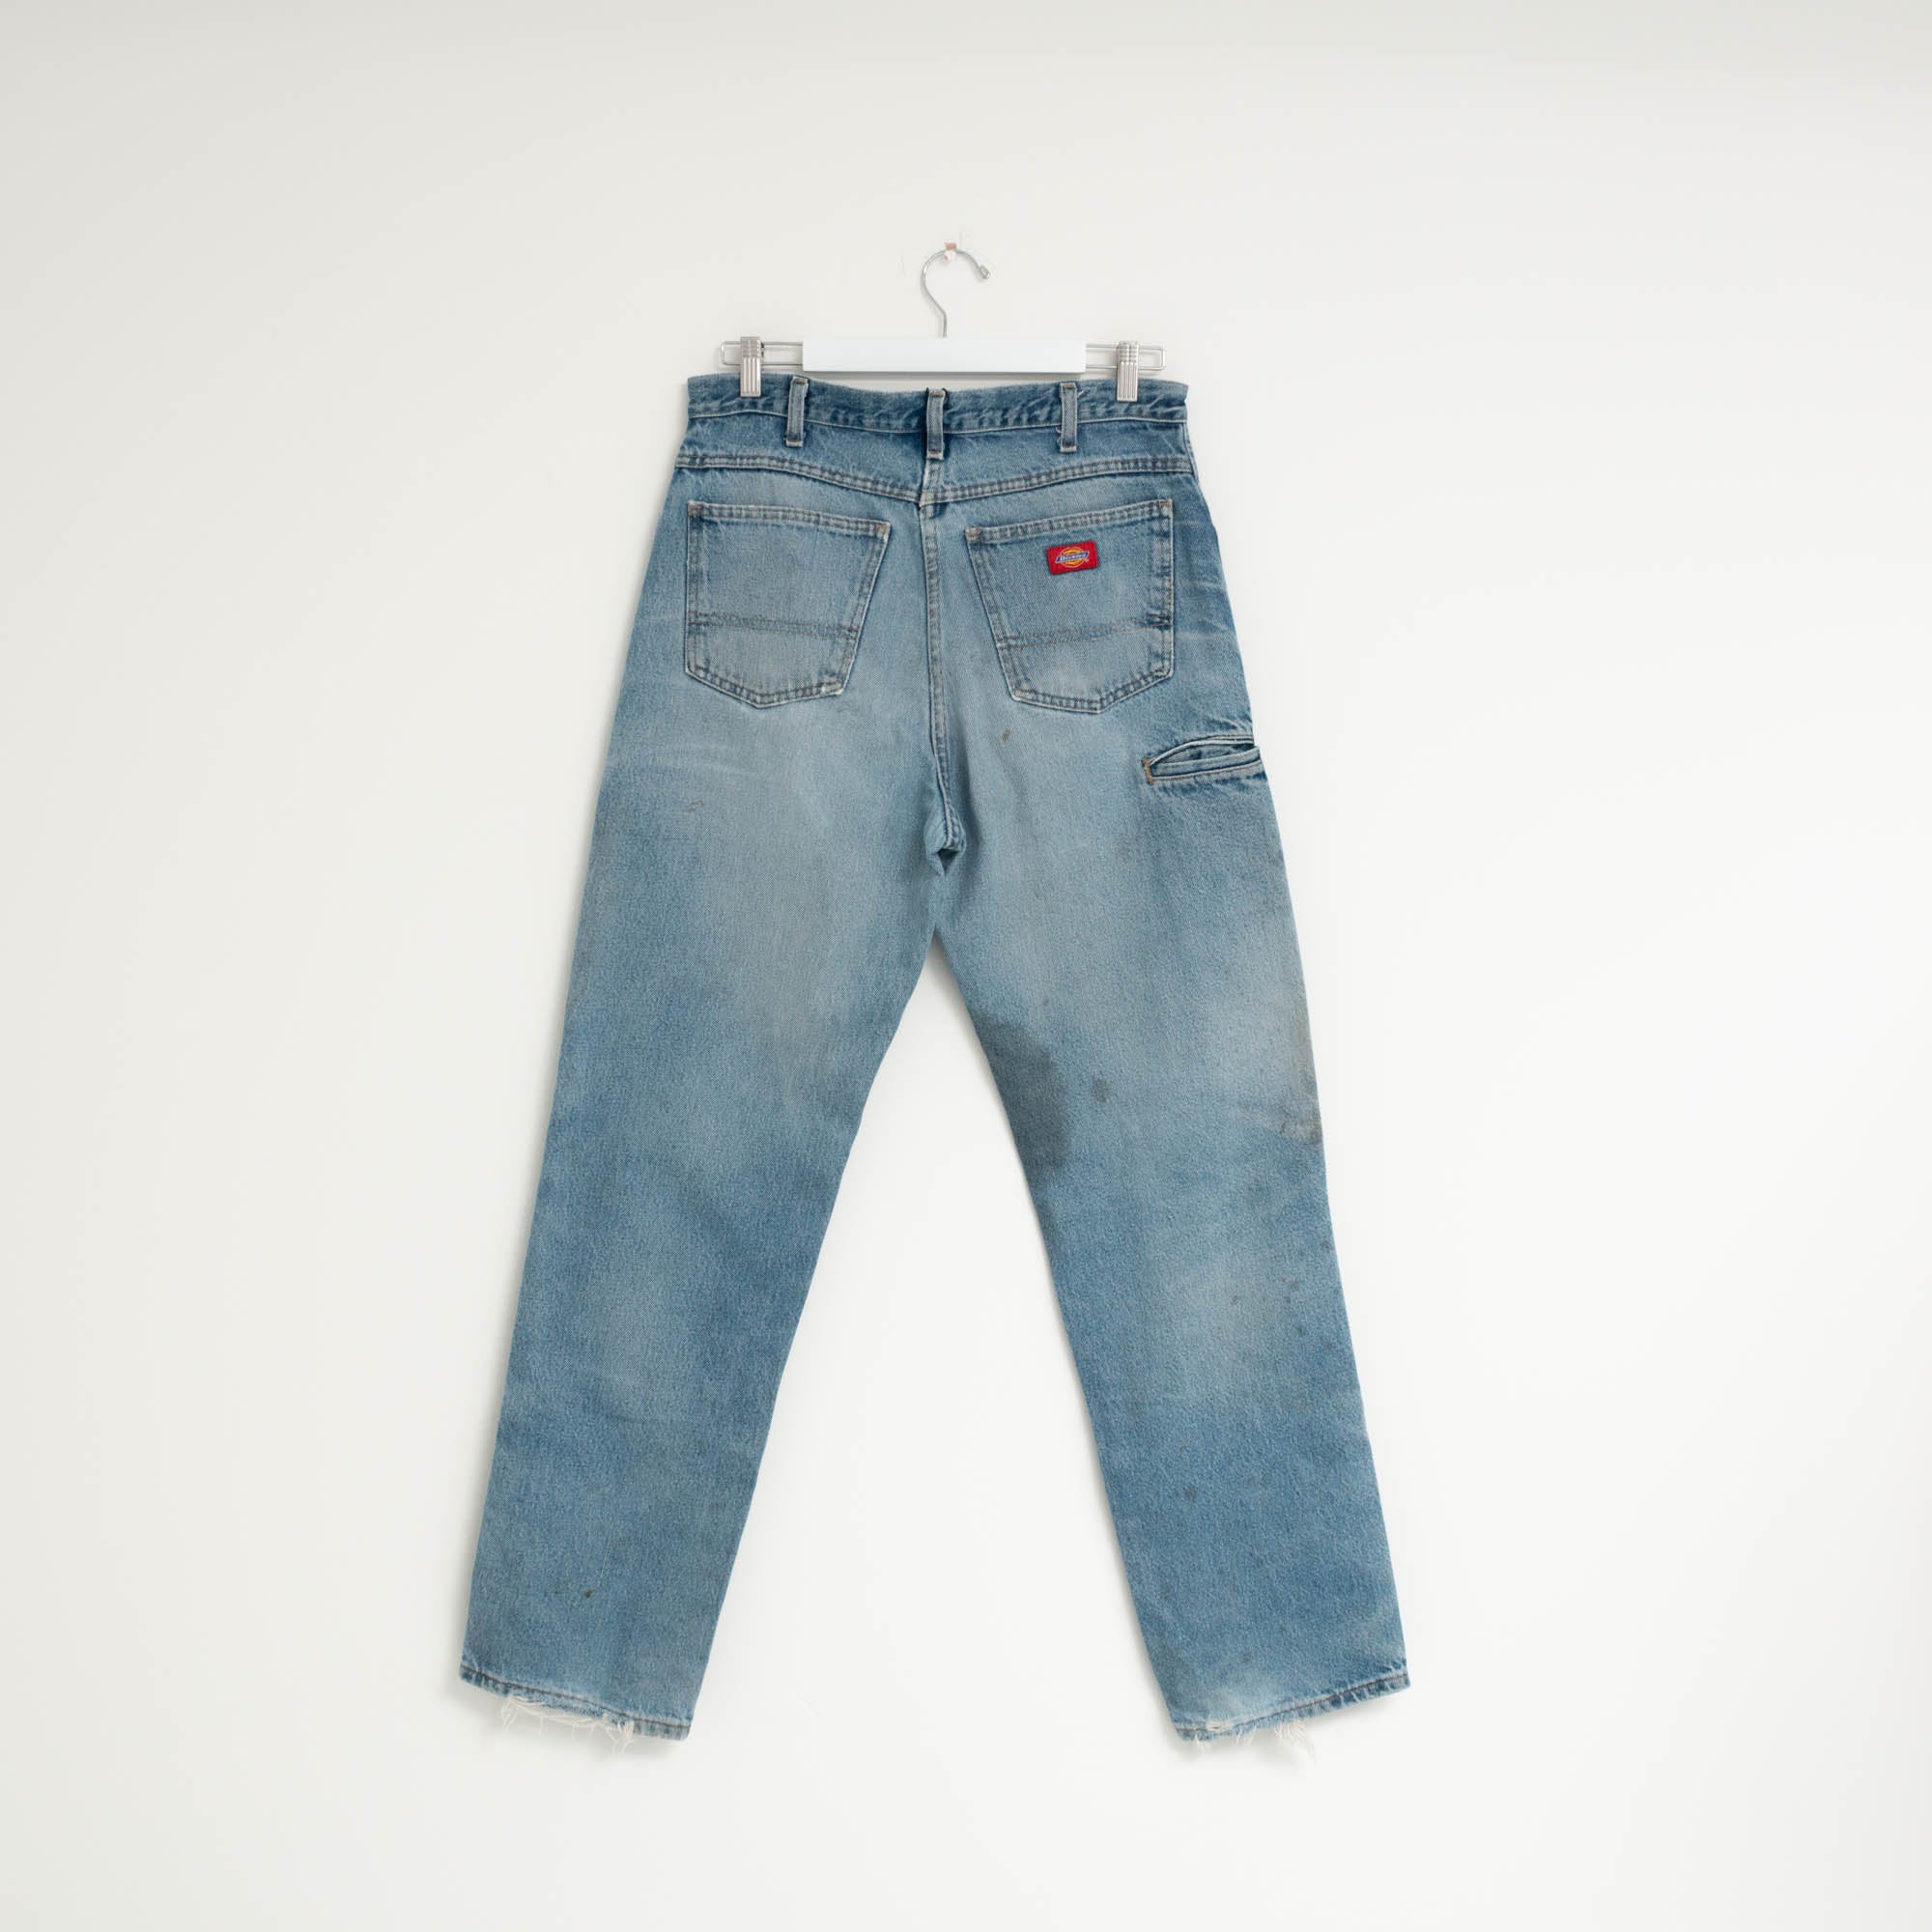 "CARPENTER" Jeans W34 L33